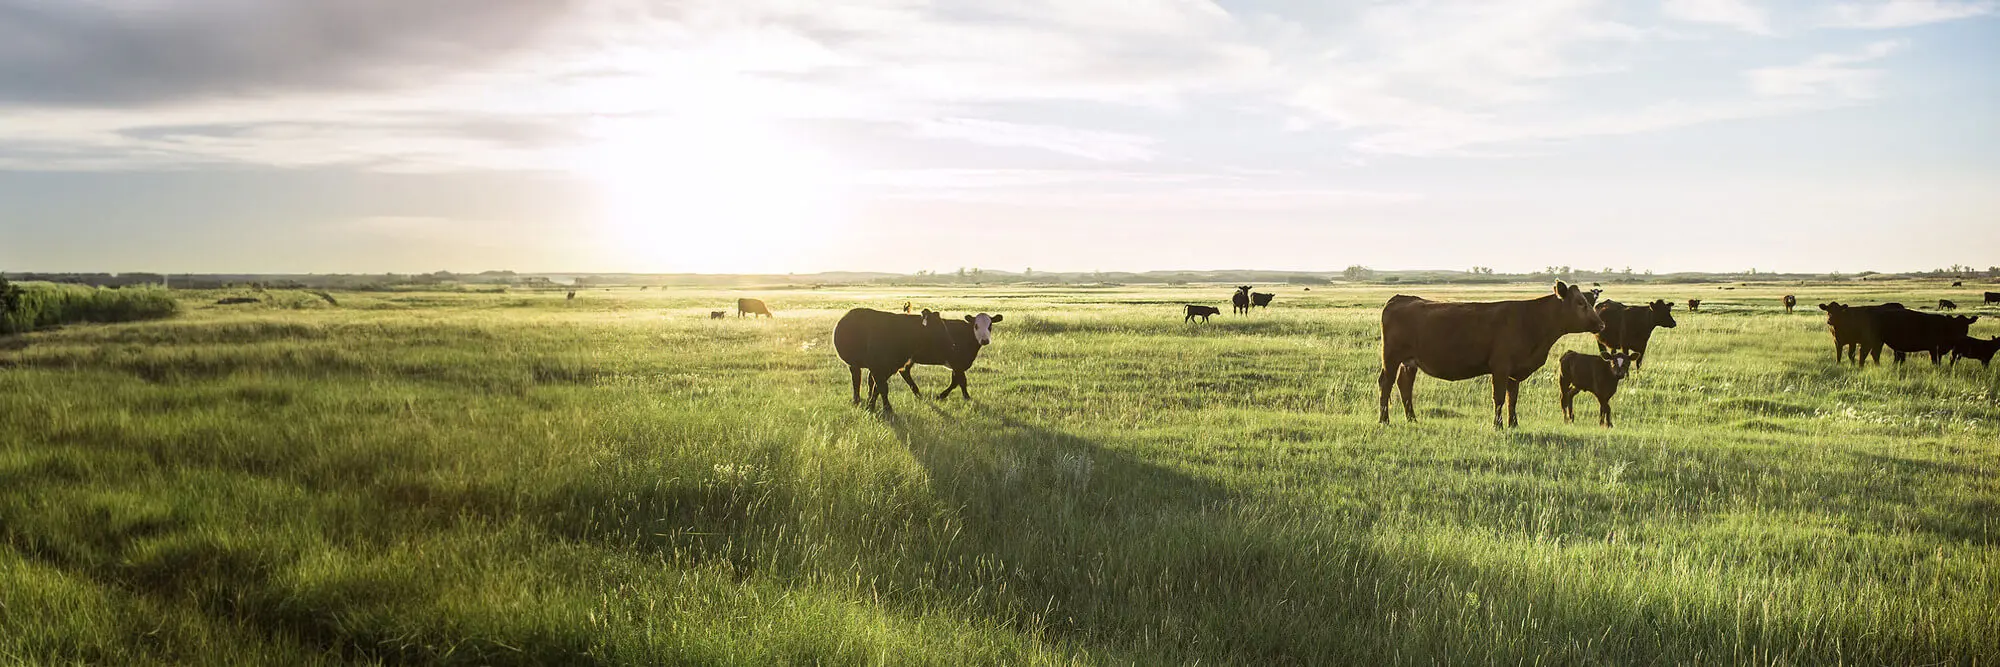 Un troupeau de bovins dans un champ vert luxuriant.